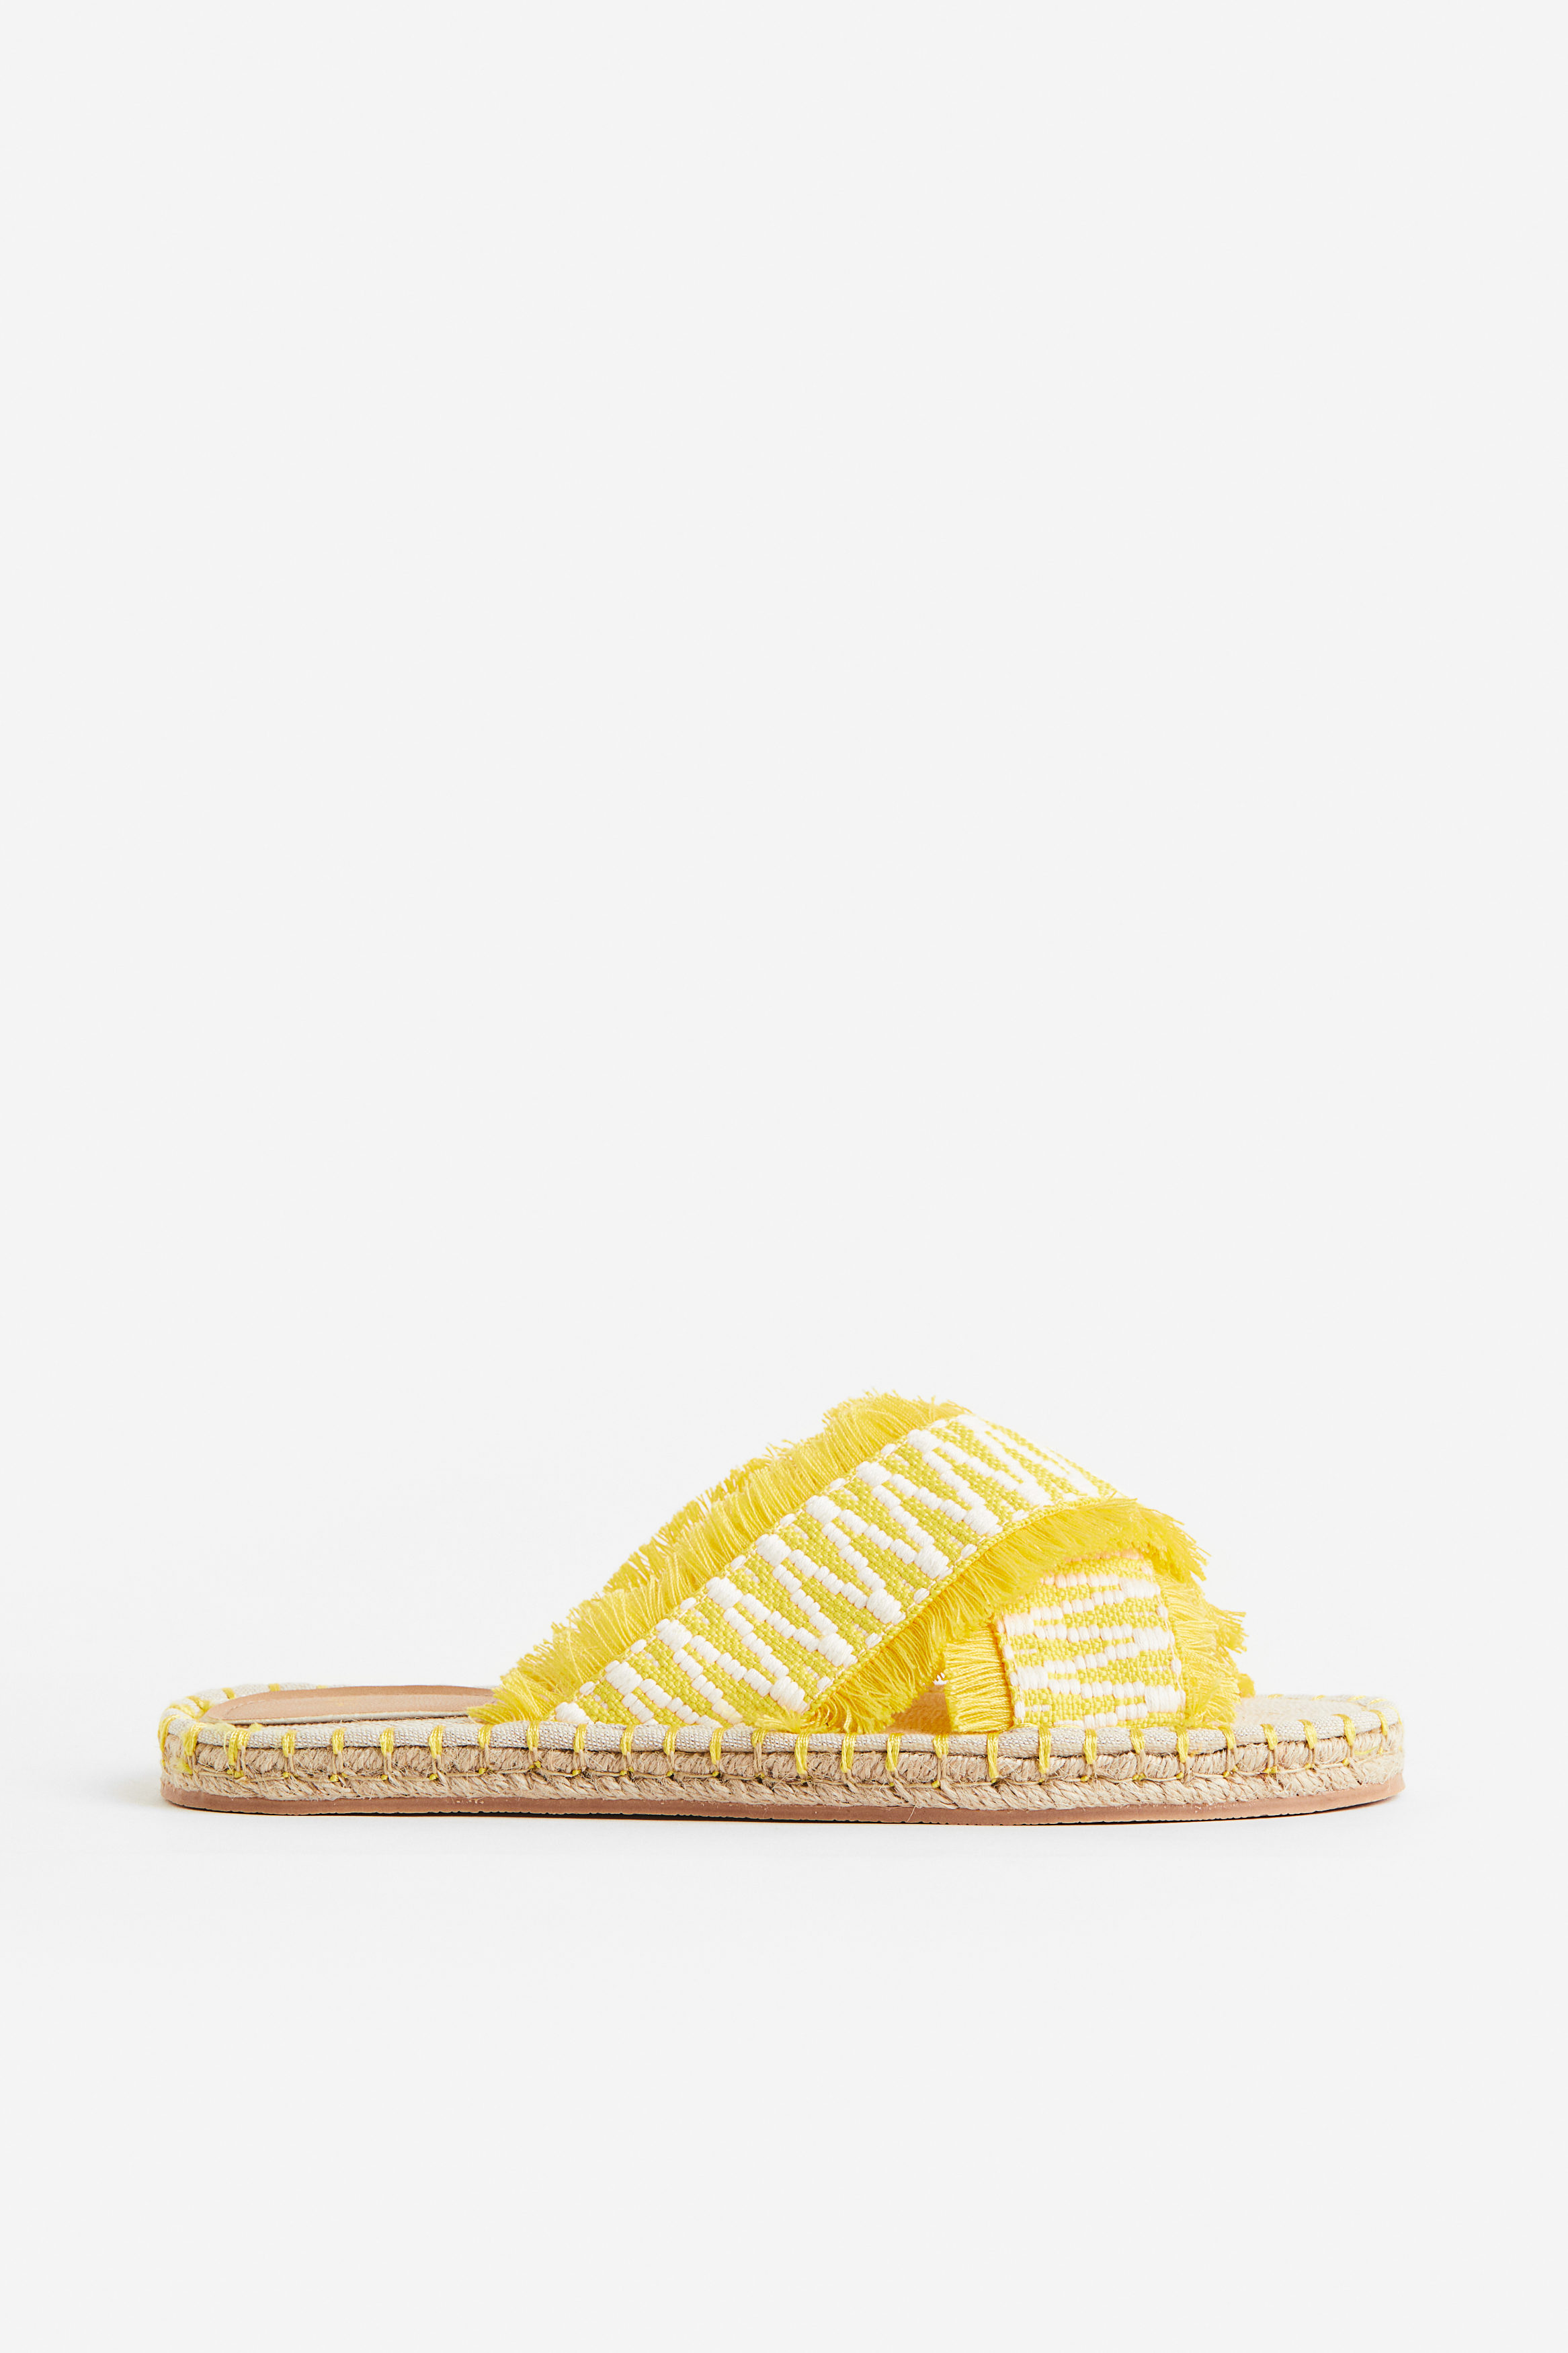 Billede af H&M Espadrillos-slip-ins Gul/mønstret, Badesandaler. Farve: Yellow/patterned I størrelse 35